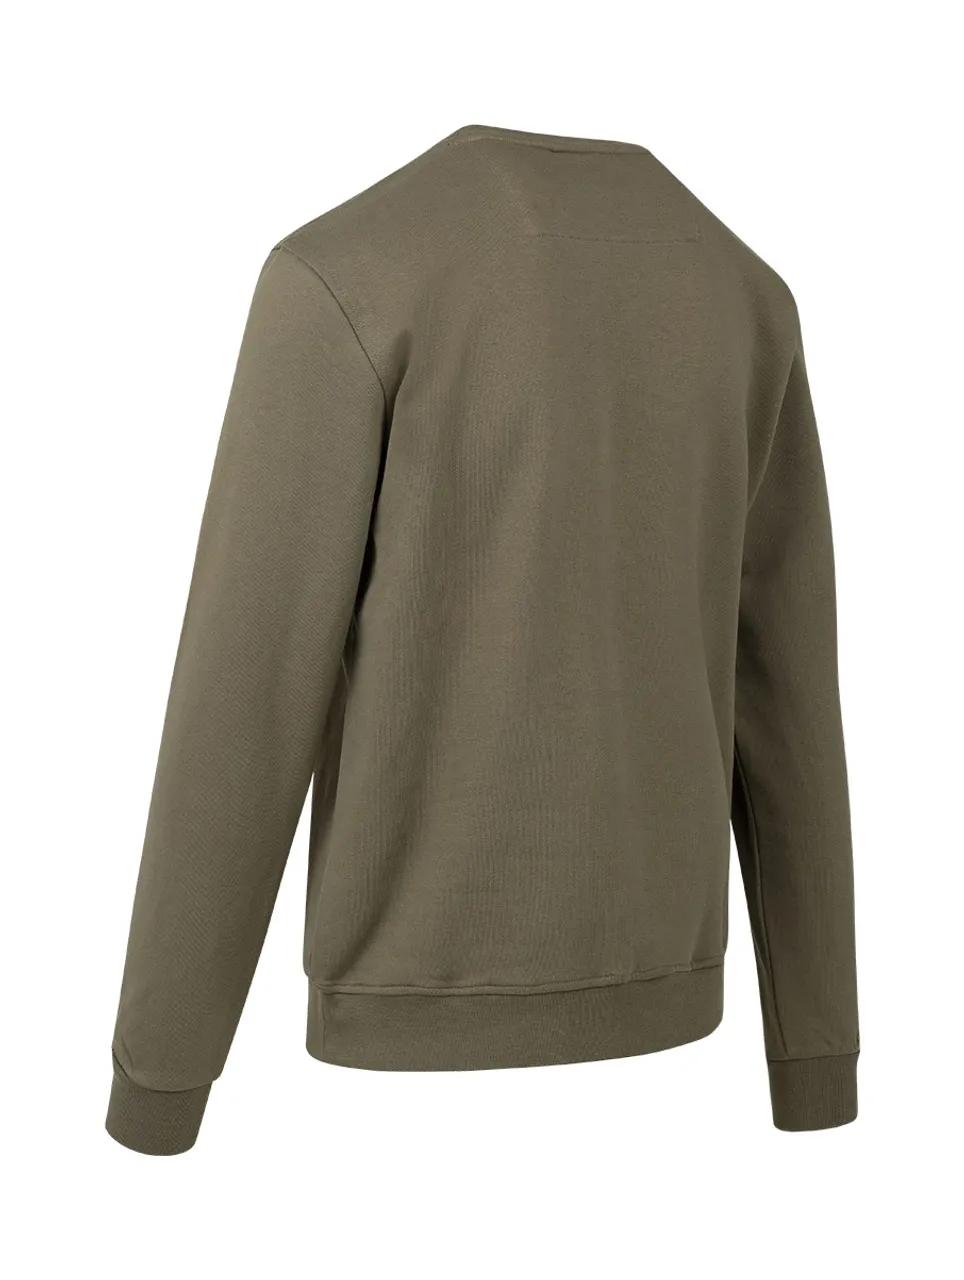 Cruyff - Hernandez Sweater